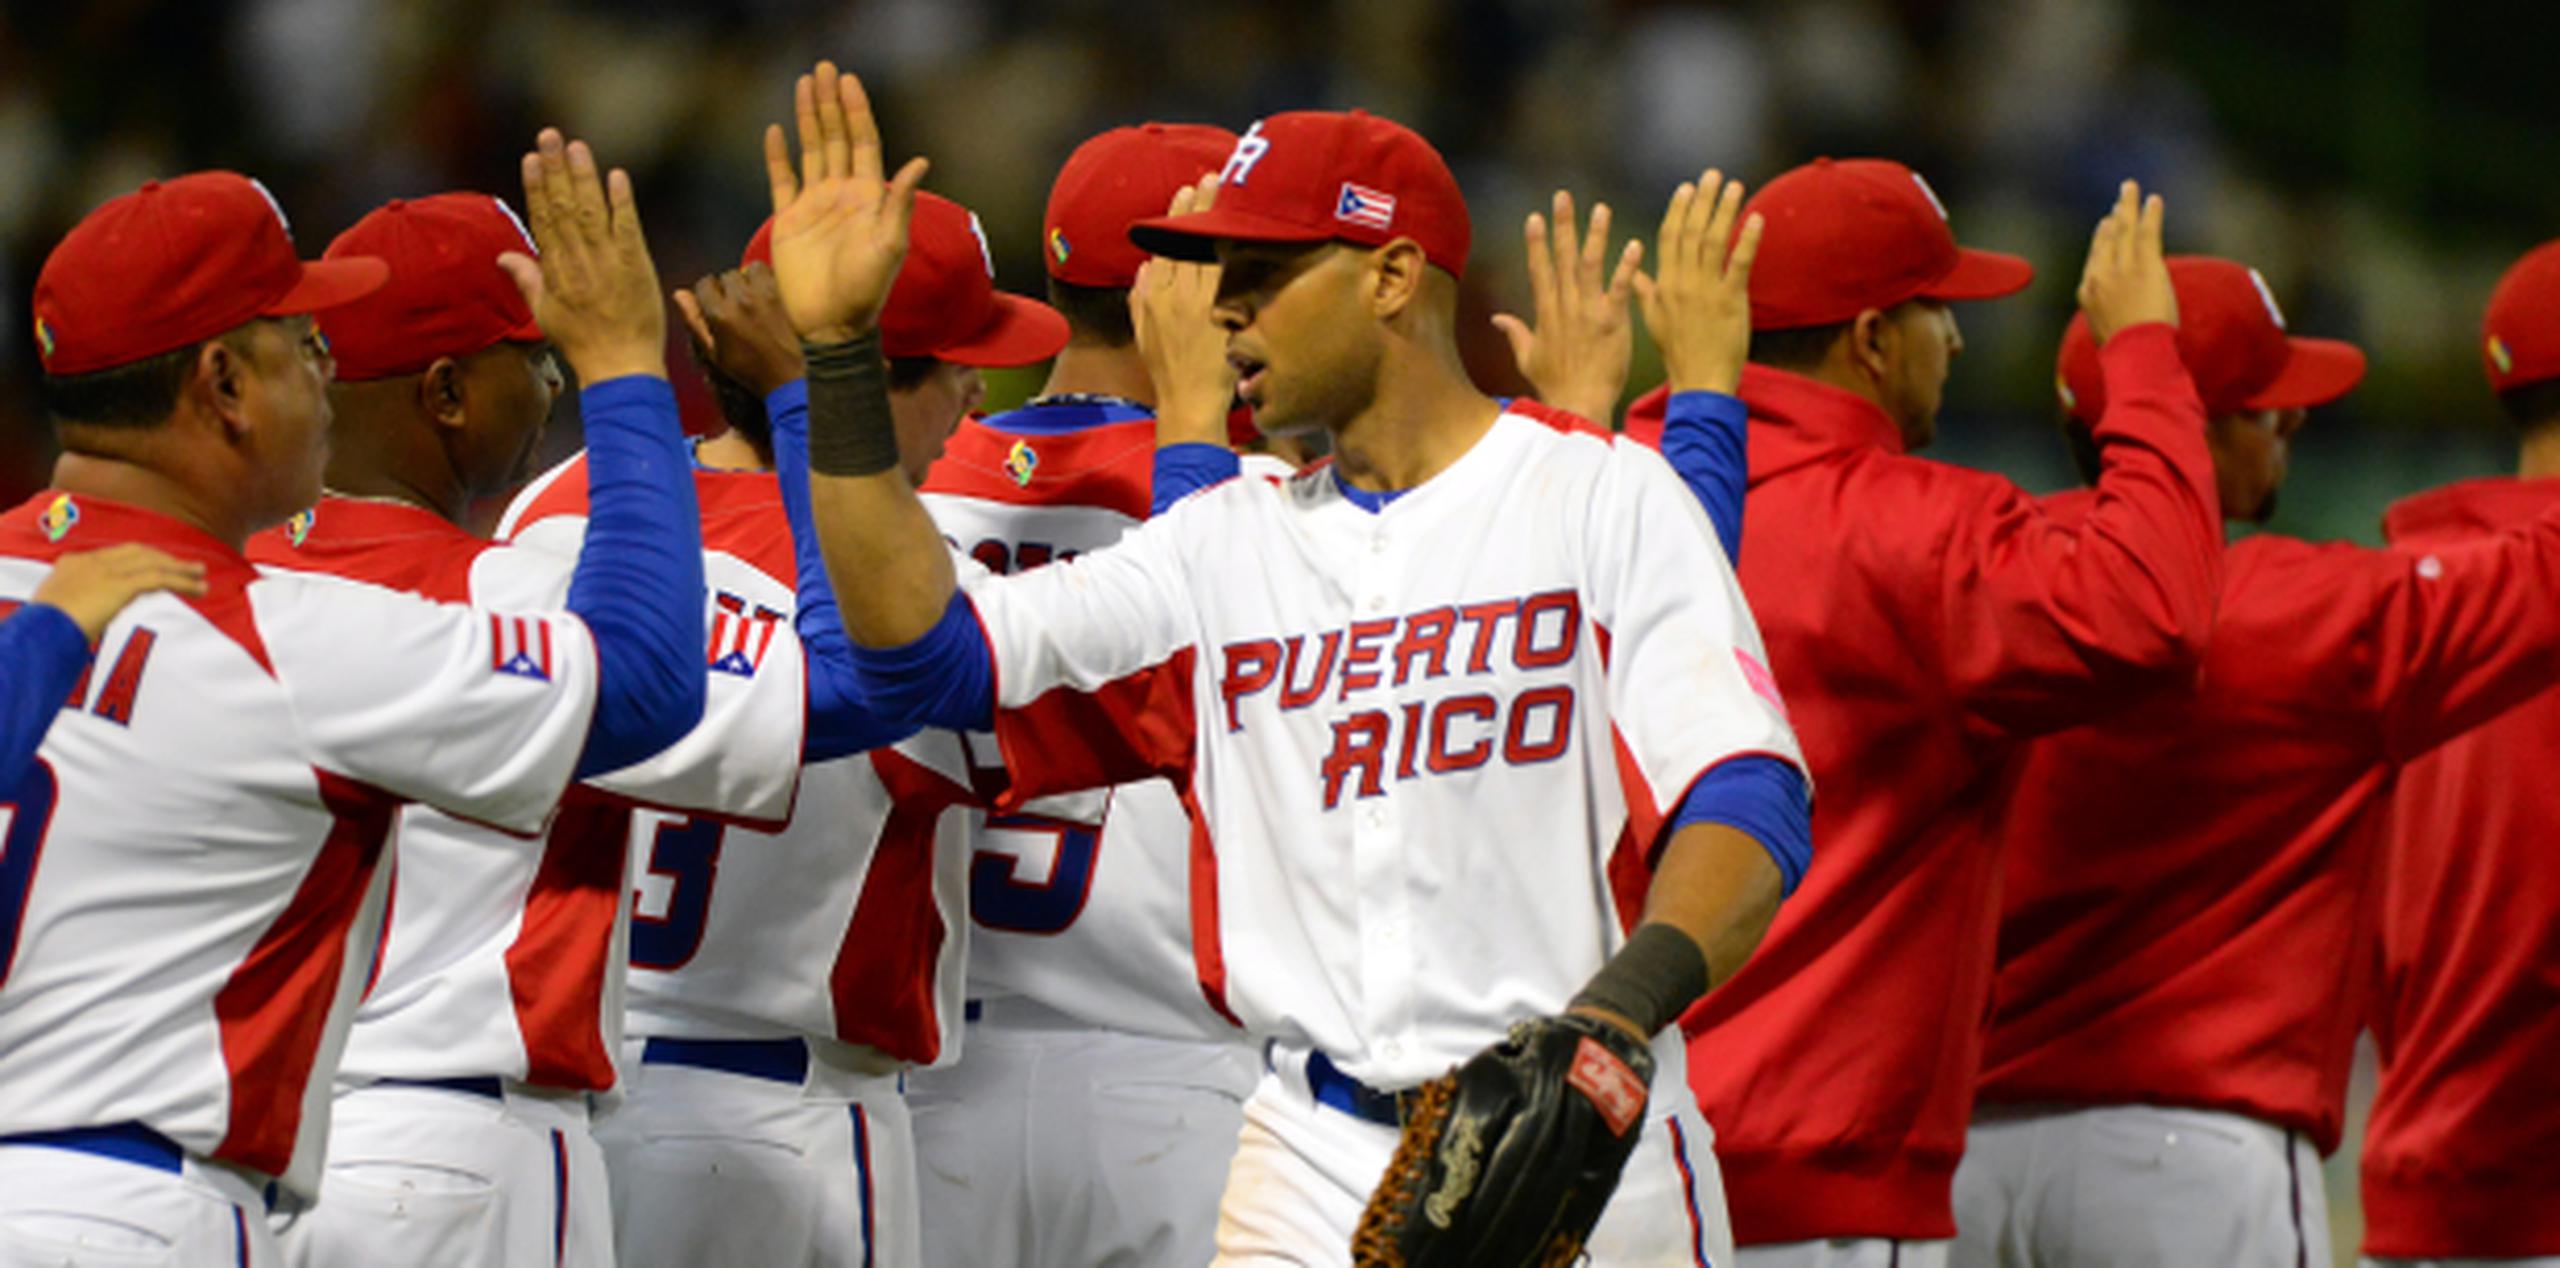 Puerto Rico tiene en su alineación algunos de los bateadores más destacados en las Grandes Ligas, como Carlos Beltrán, Yadier Molina y Alexis Ríos.(carlos.giusti@gfrmedia.com)